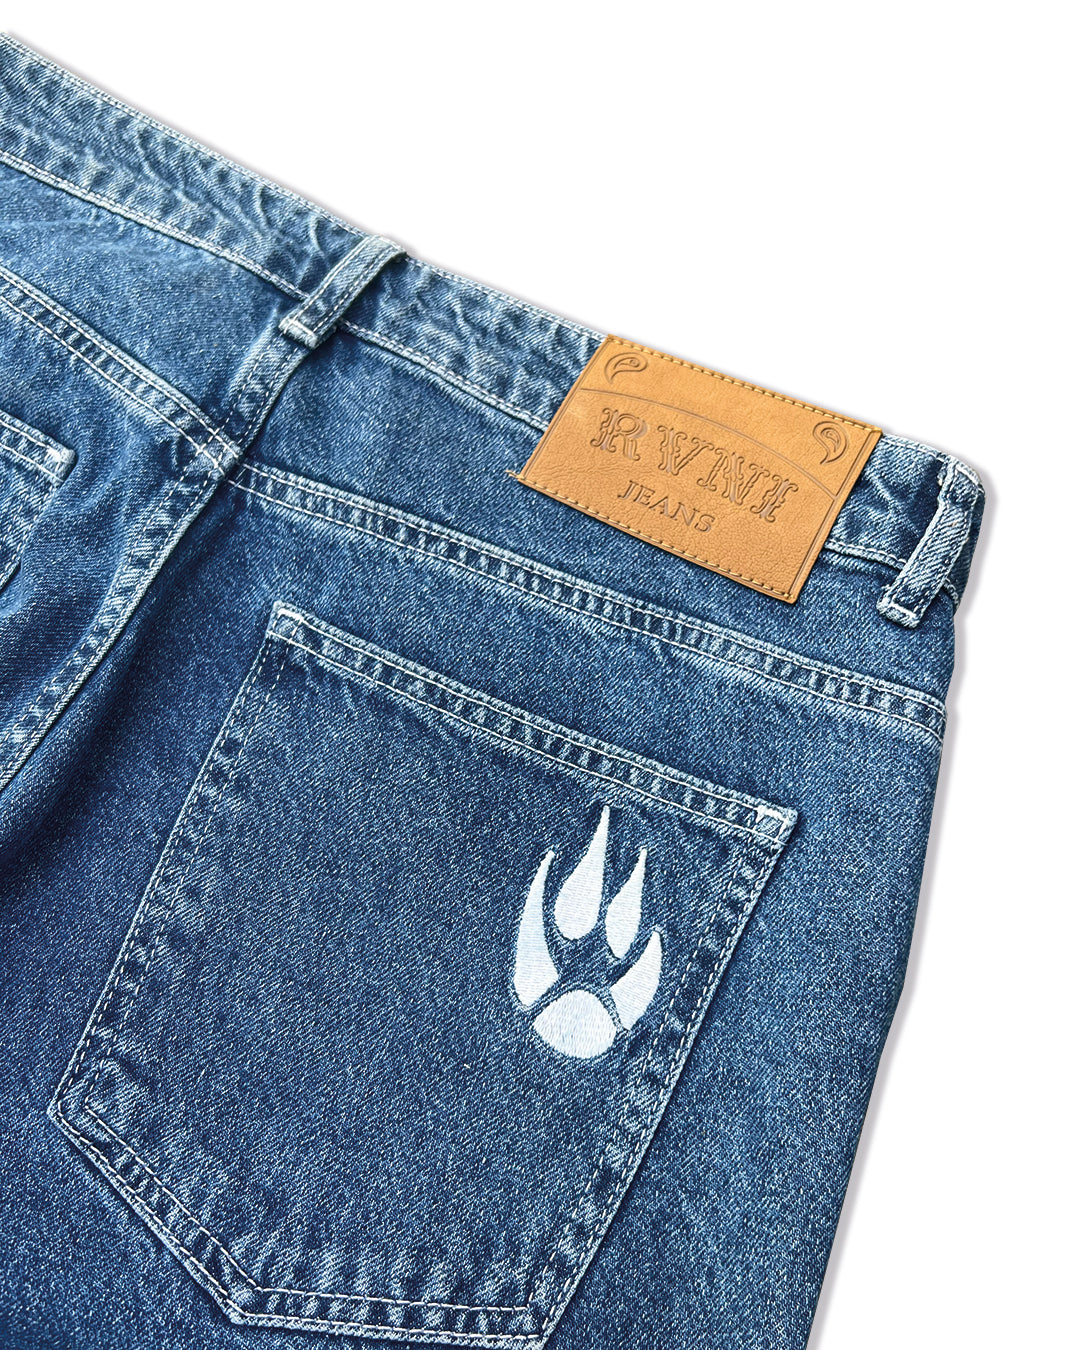 Doberman Jeans Washed Mid Blue